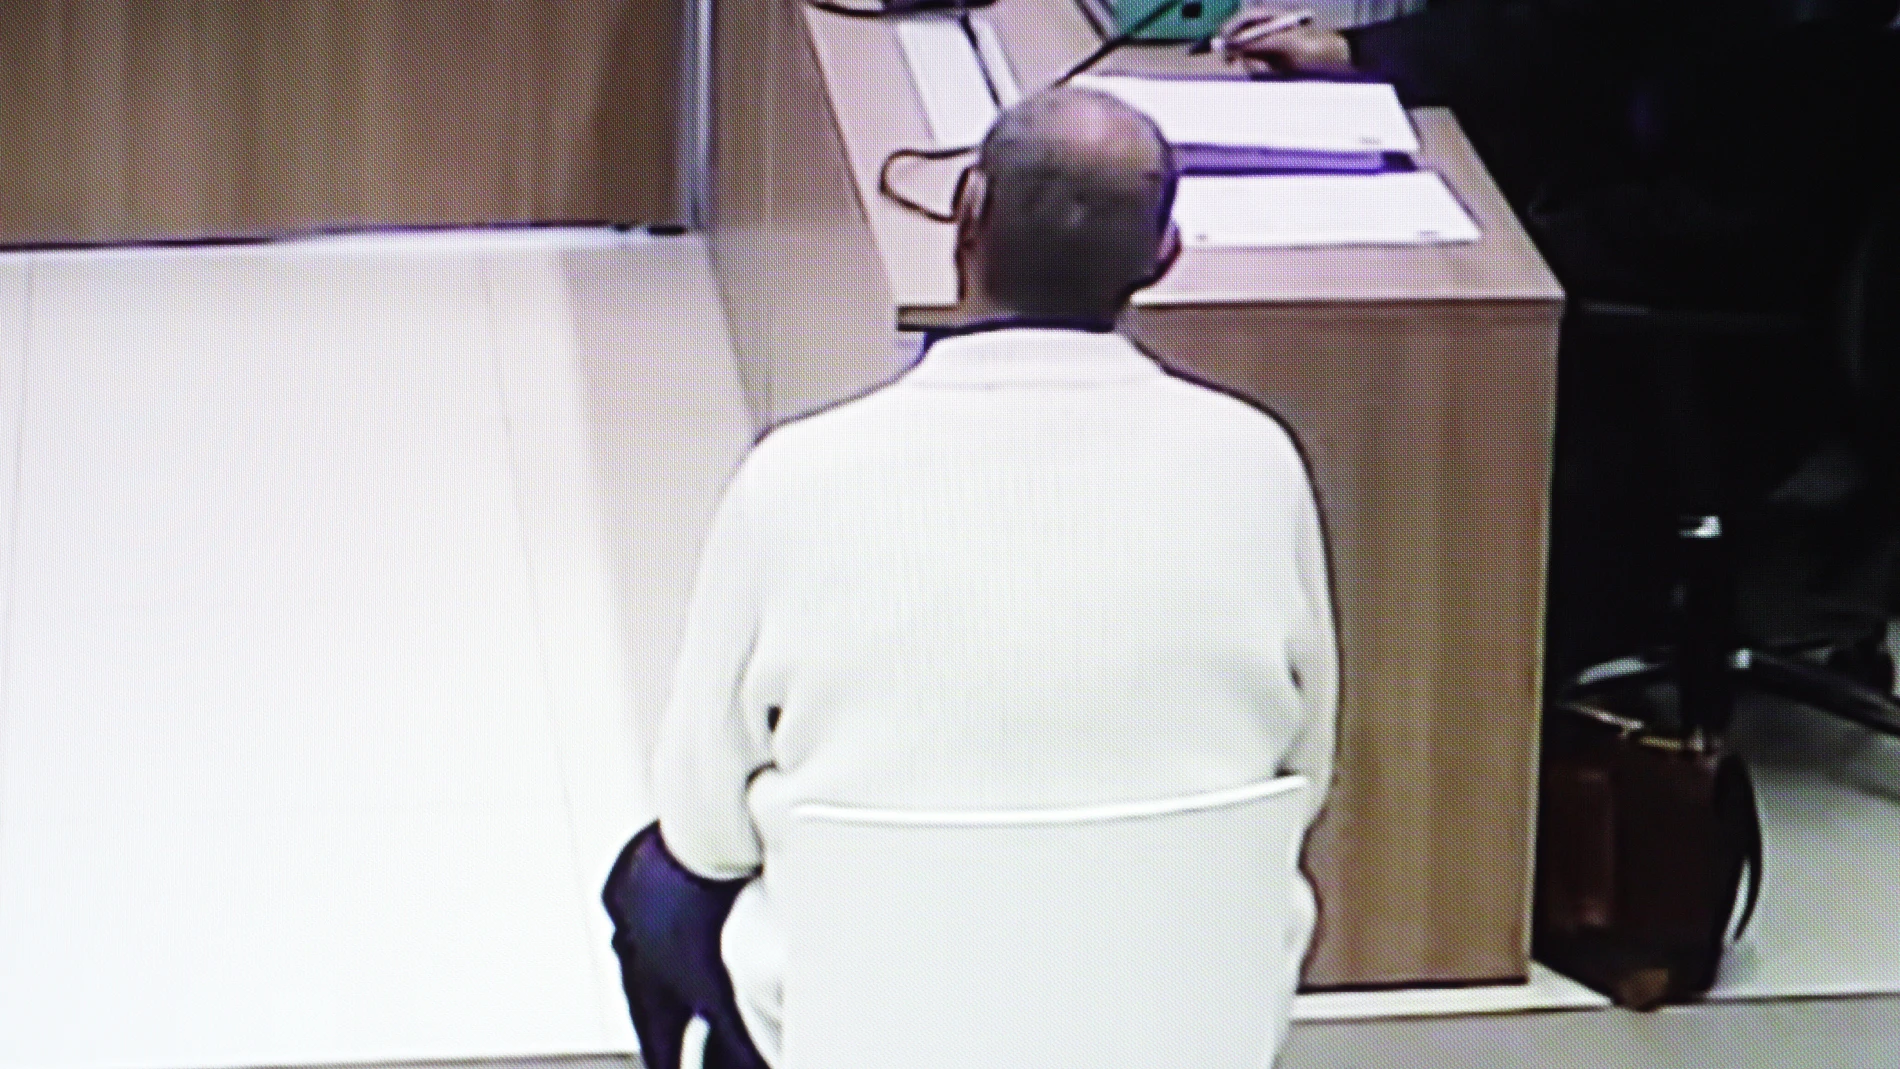 Imagen del acusado durante la jornada del juicio de hoy